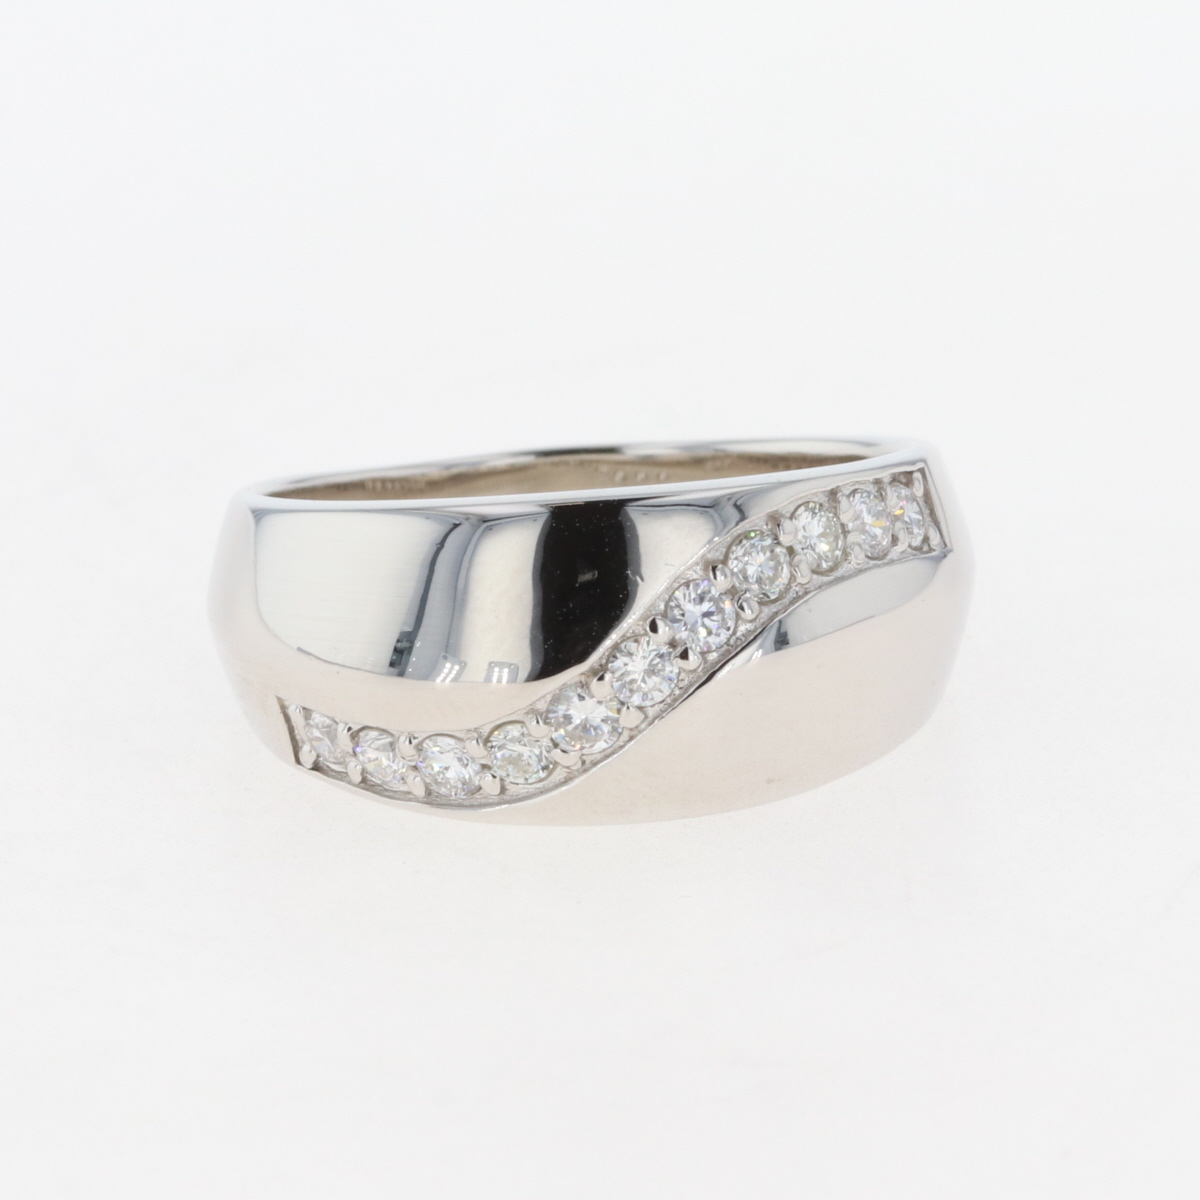  メレダイヤ デザインリング プラチナ 指輪 リング 15号 Pt900 ダイヤモンド レディース 